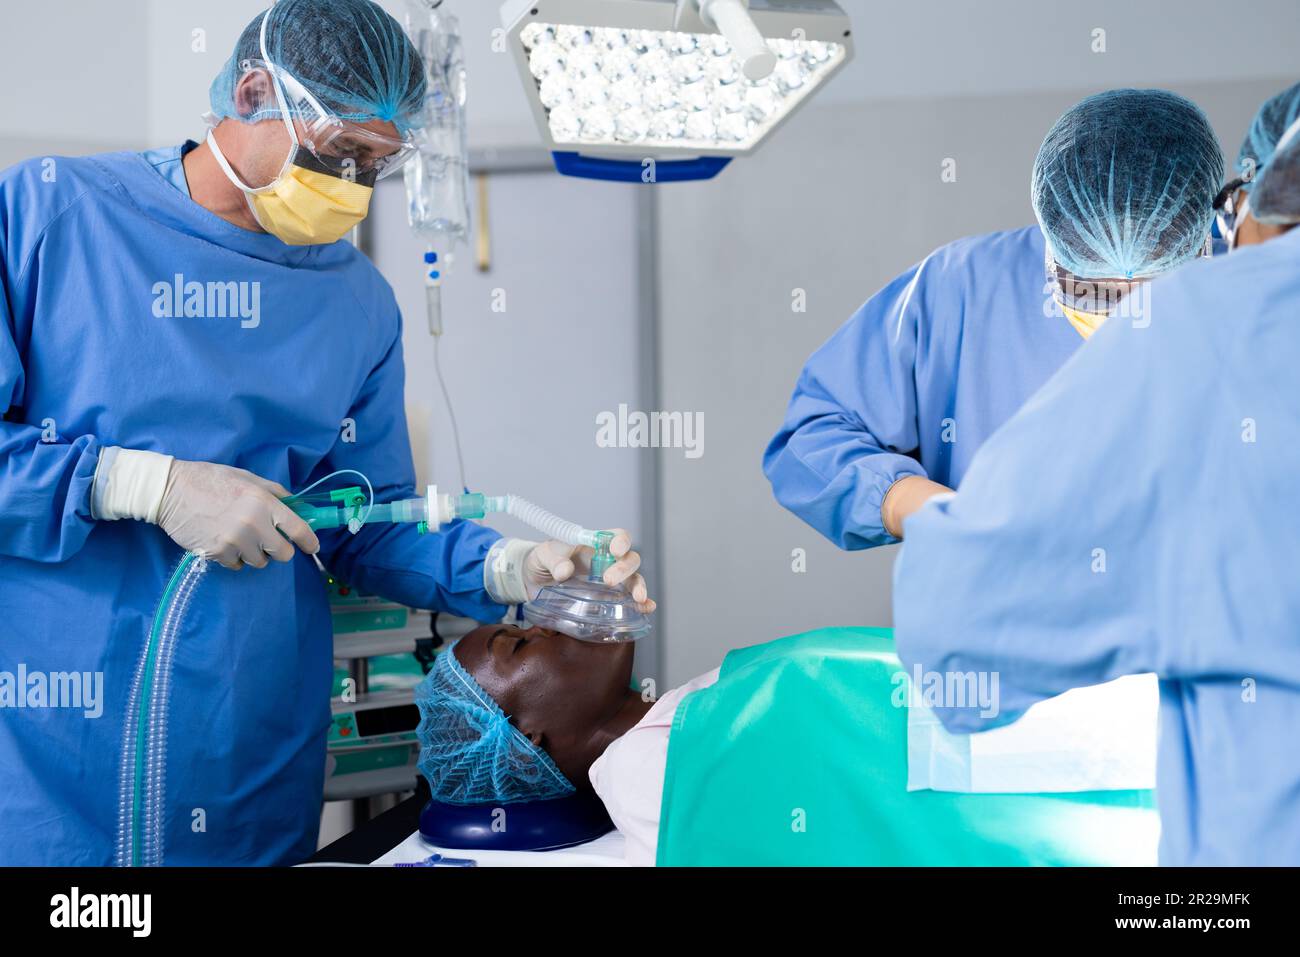 Divers groupes de chirurgiens dont le patient est masculin reçoivent un masque anesthésique dans le bloc opératoire Banque D'Images